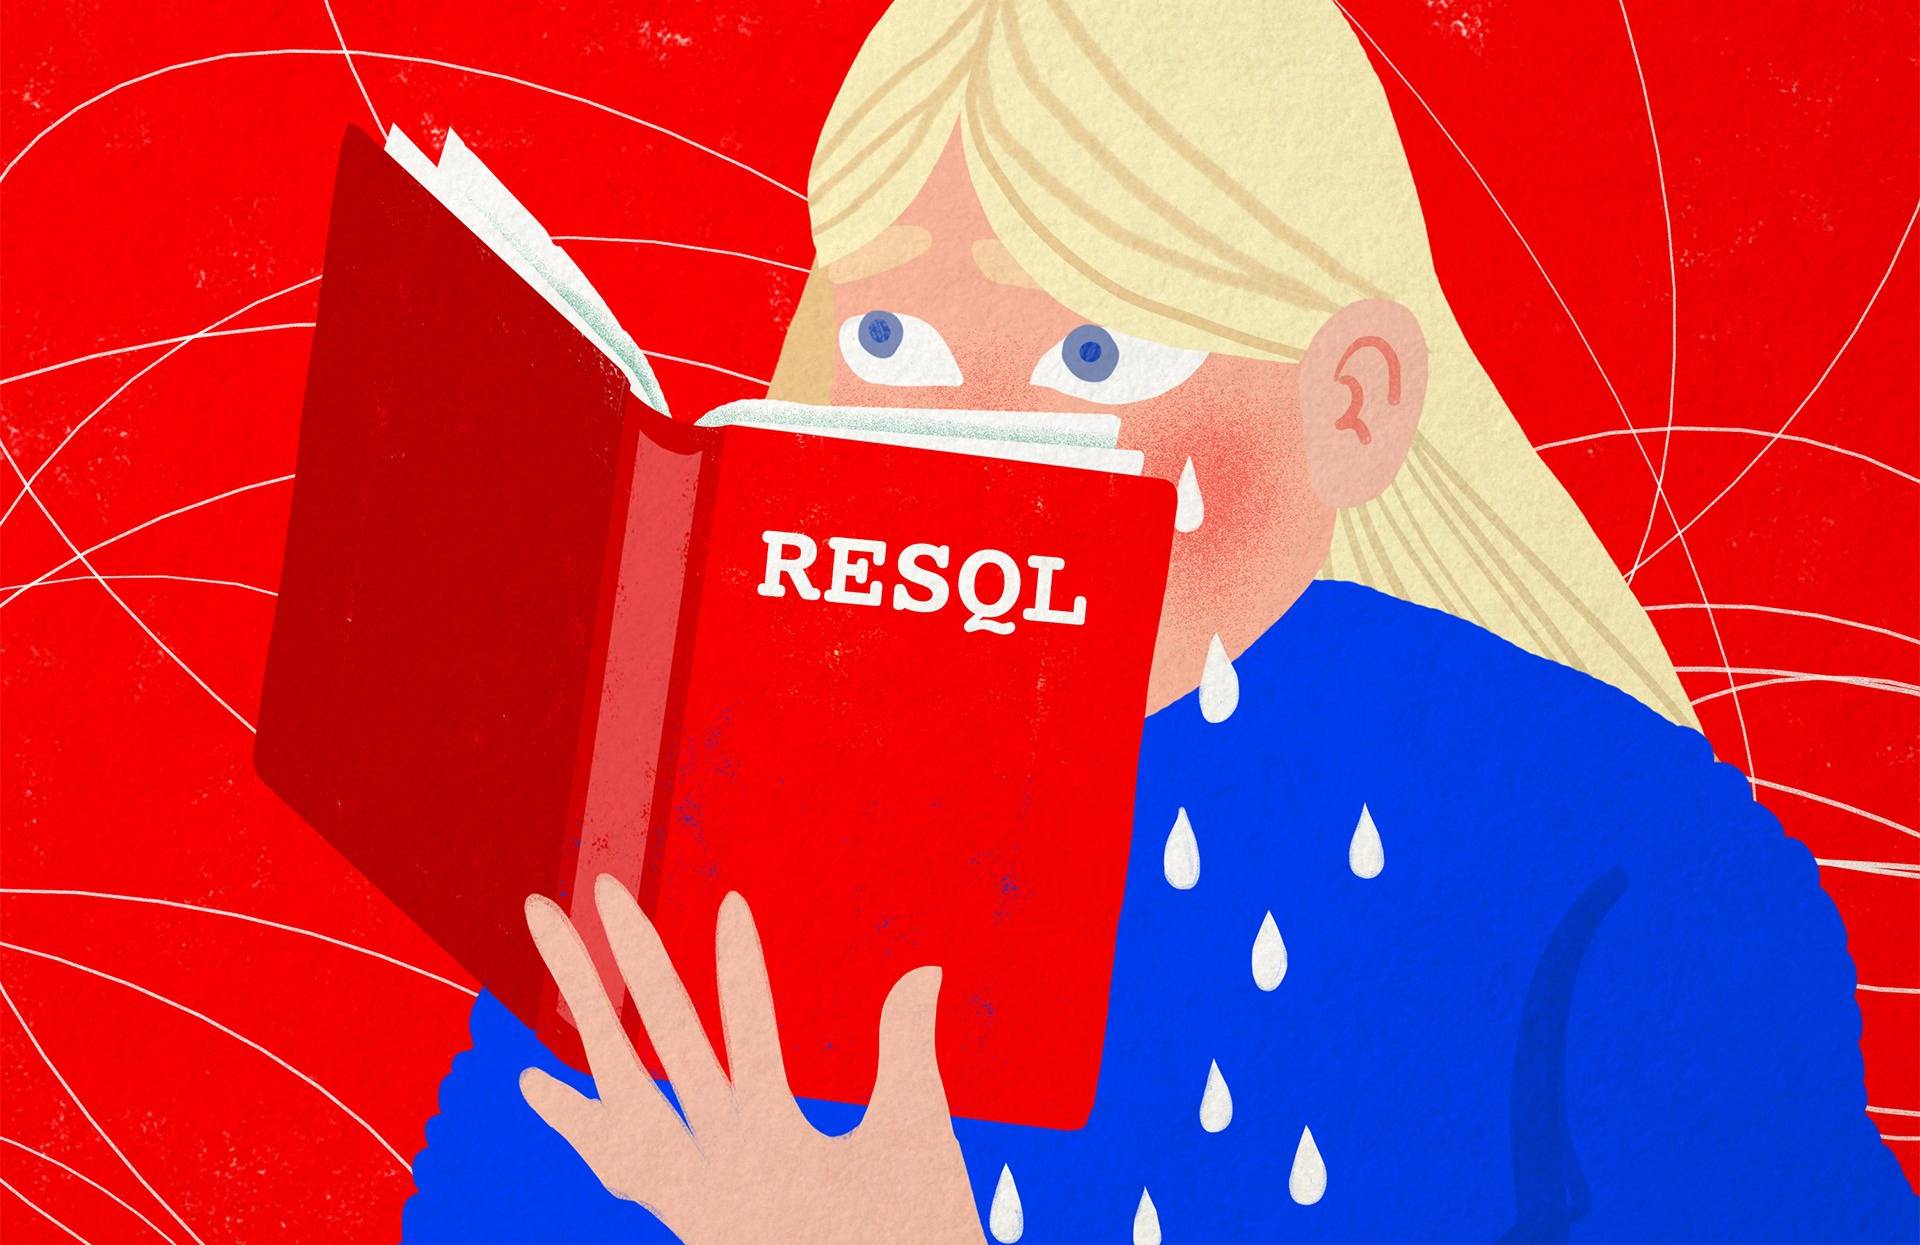 ilustracja przedstawia dziewczynkę czytającą książkę z czerwoną okładką i napisem RESQL